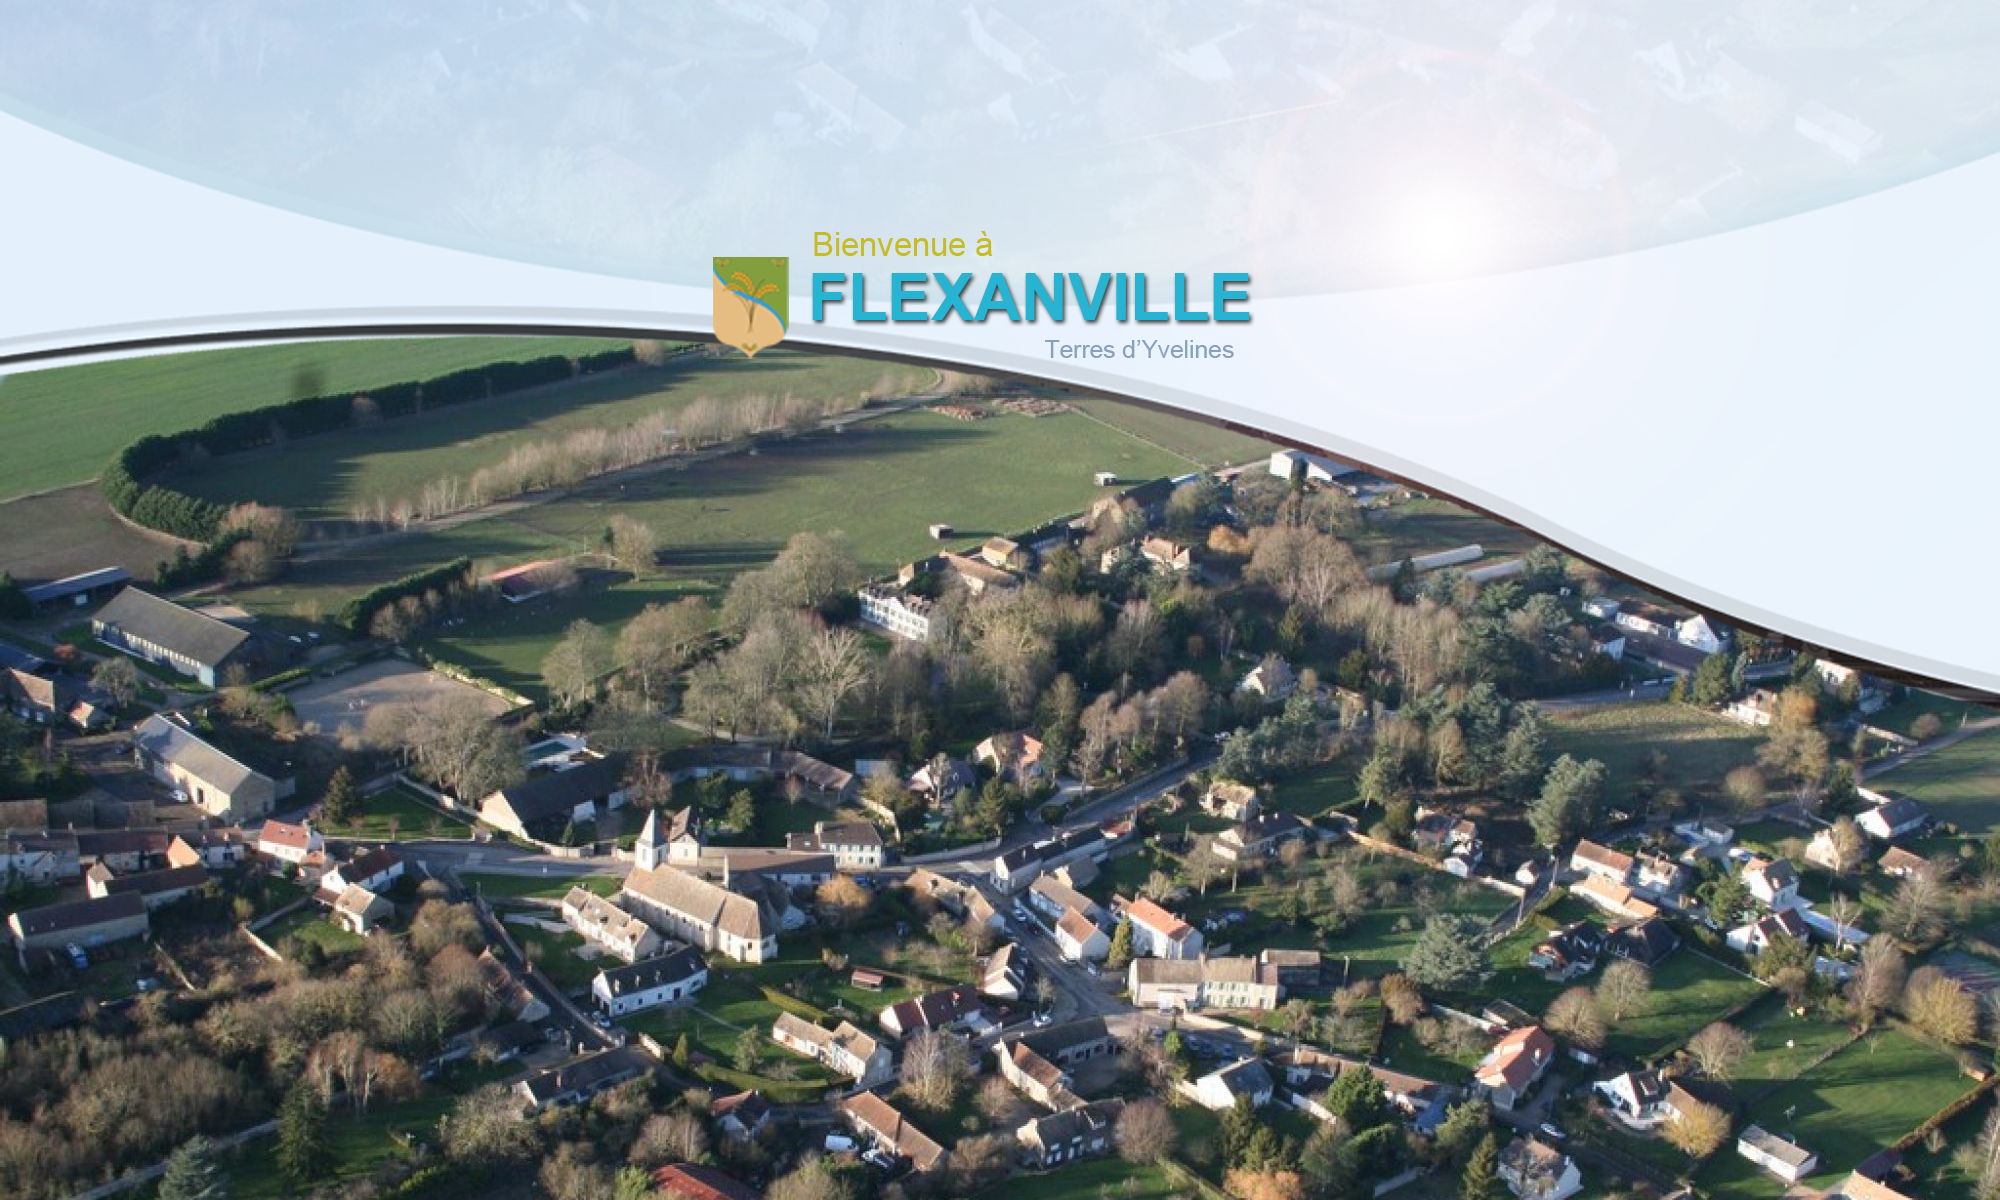 Flexanville